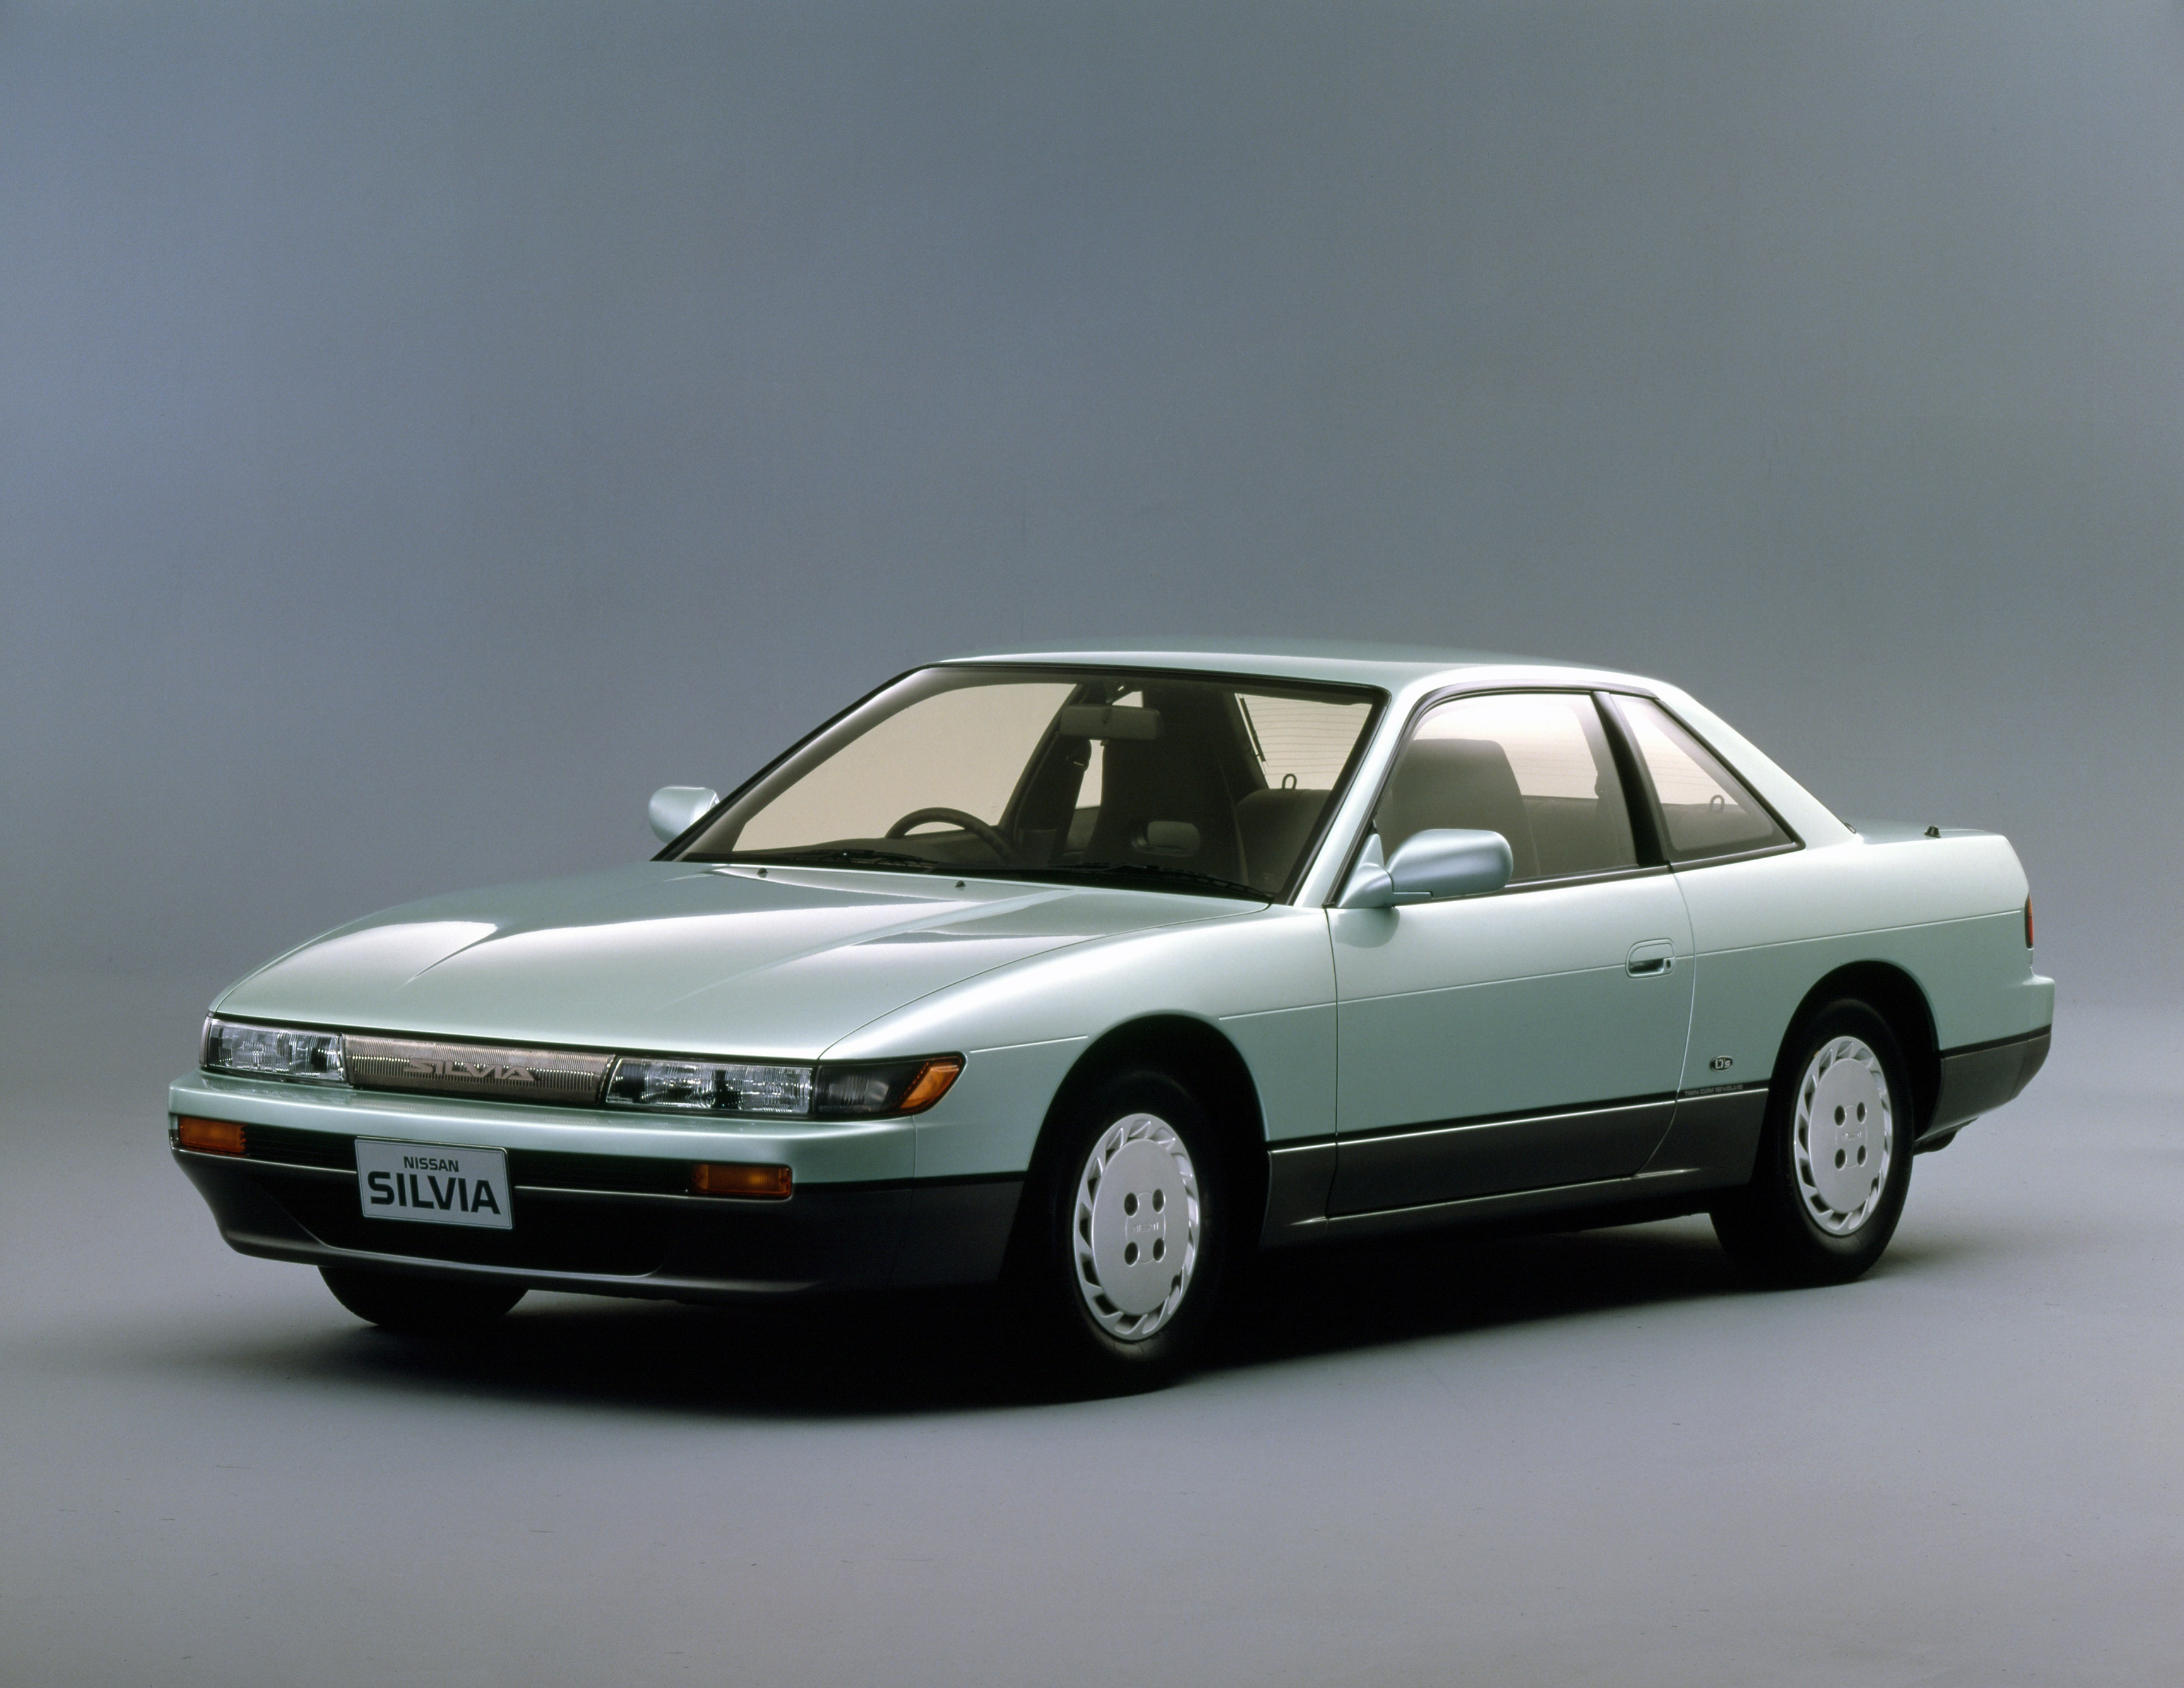 80年代にヒットした国産デートカー5選 Gq Japan 自動車情報サイト 新車 中古車 Carview